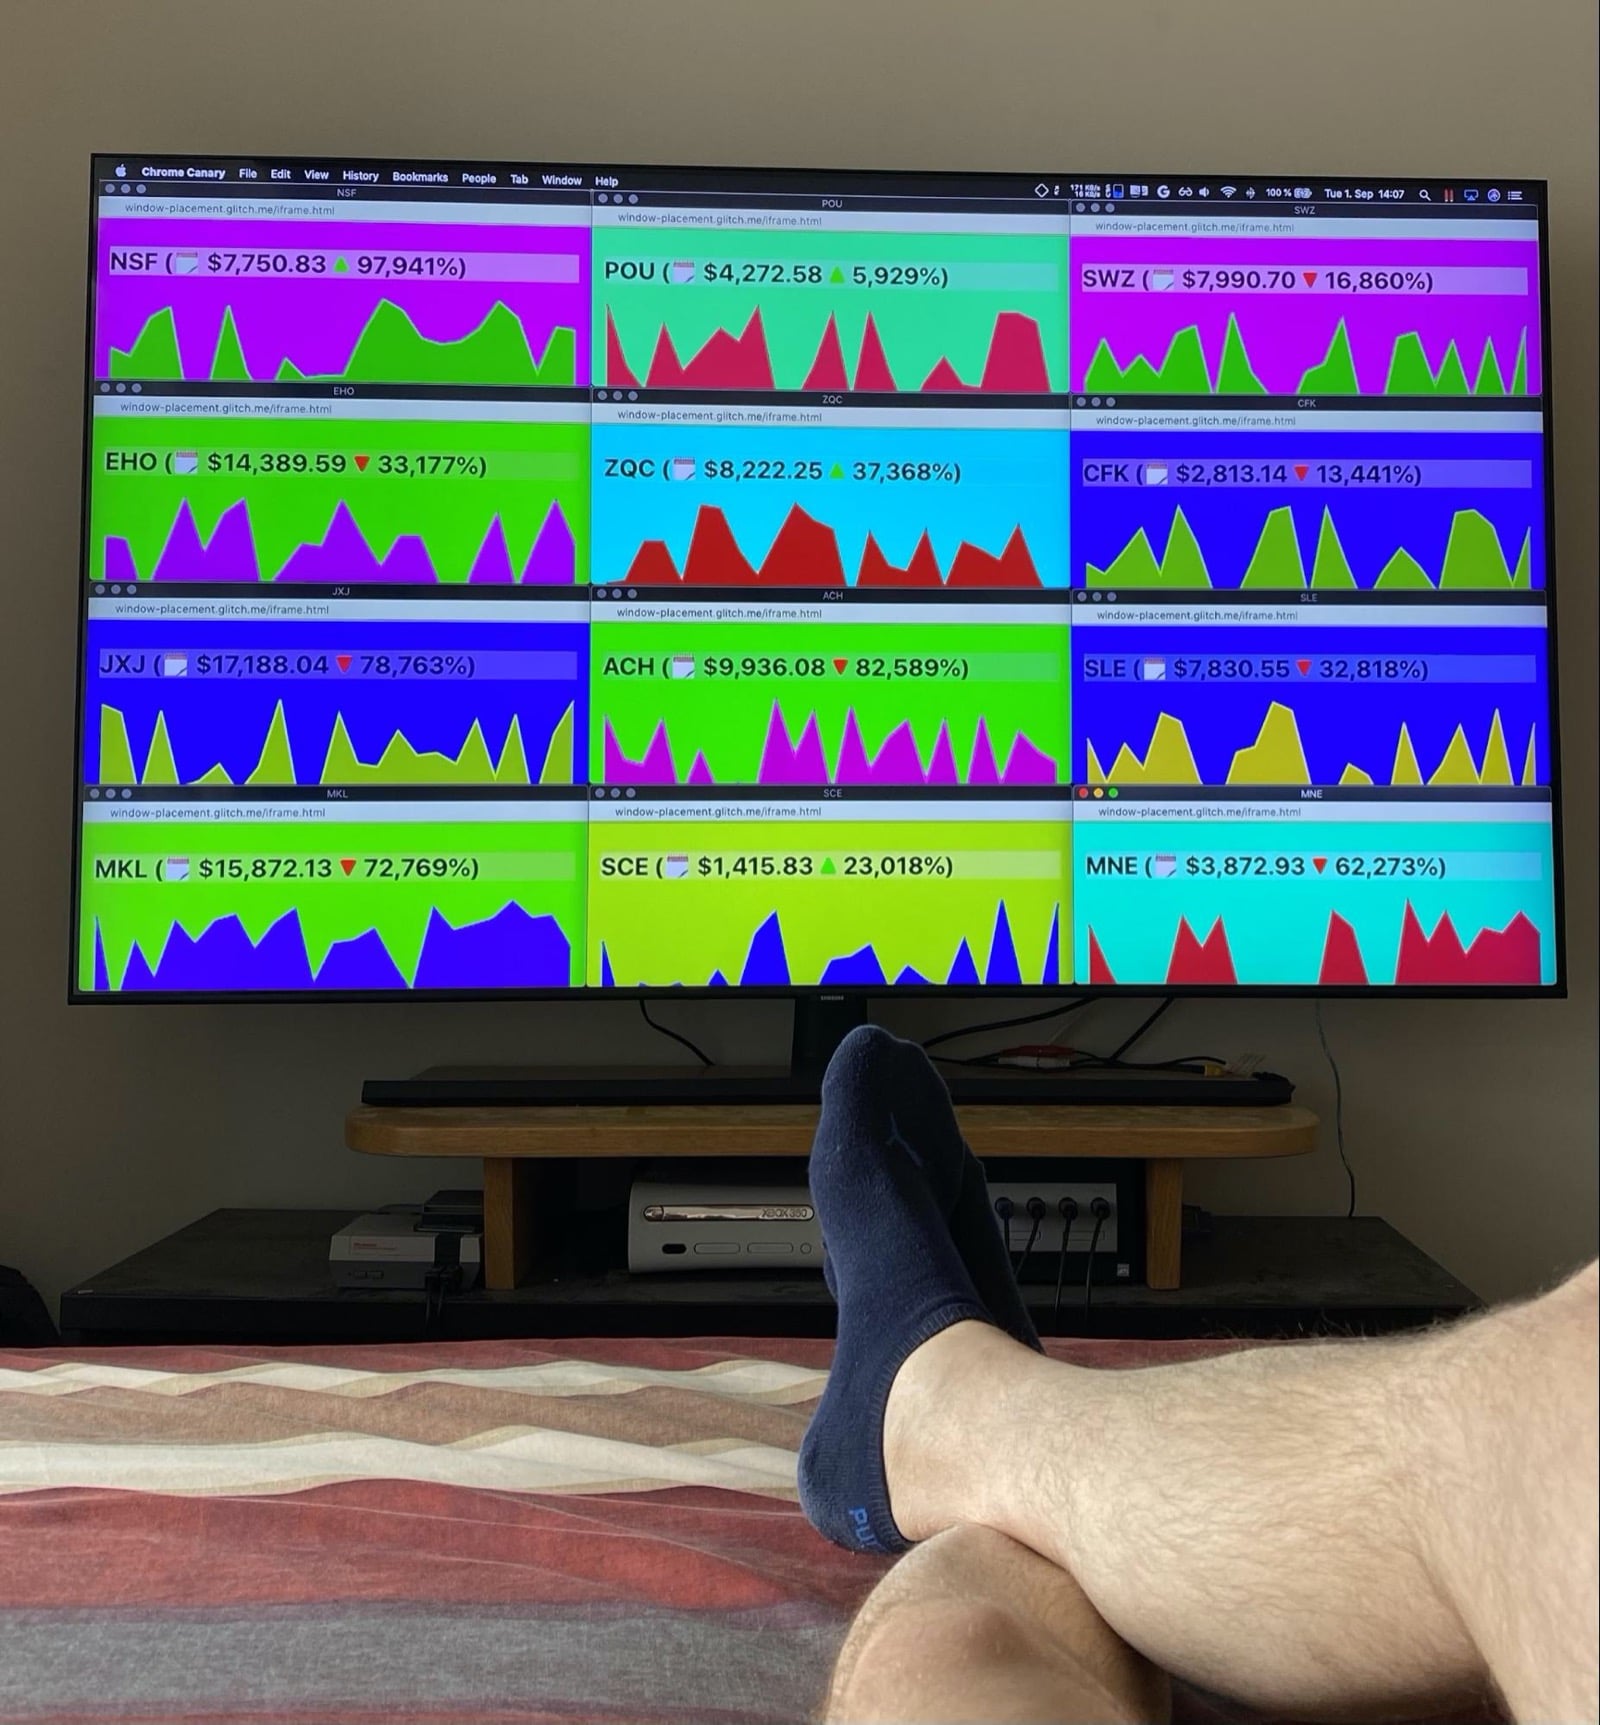 شاشة تلفزيون ضخمة في نهاية السرير تظهر جزئيًا ساقي المؤلف تظهر على الشاشة مكتب مزيّف لتداول العملات المشفّرة. 